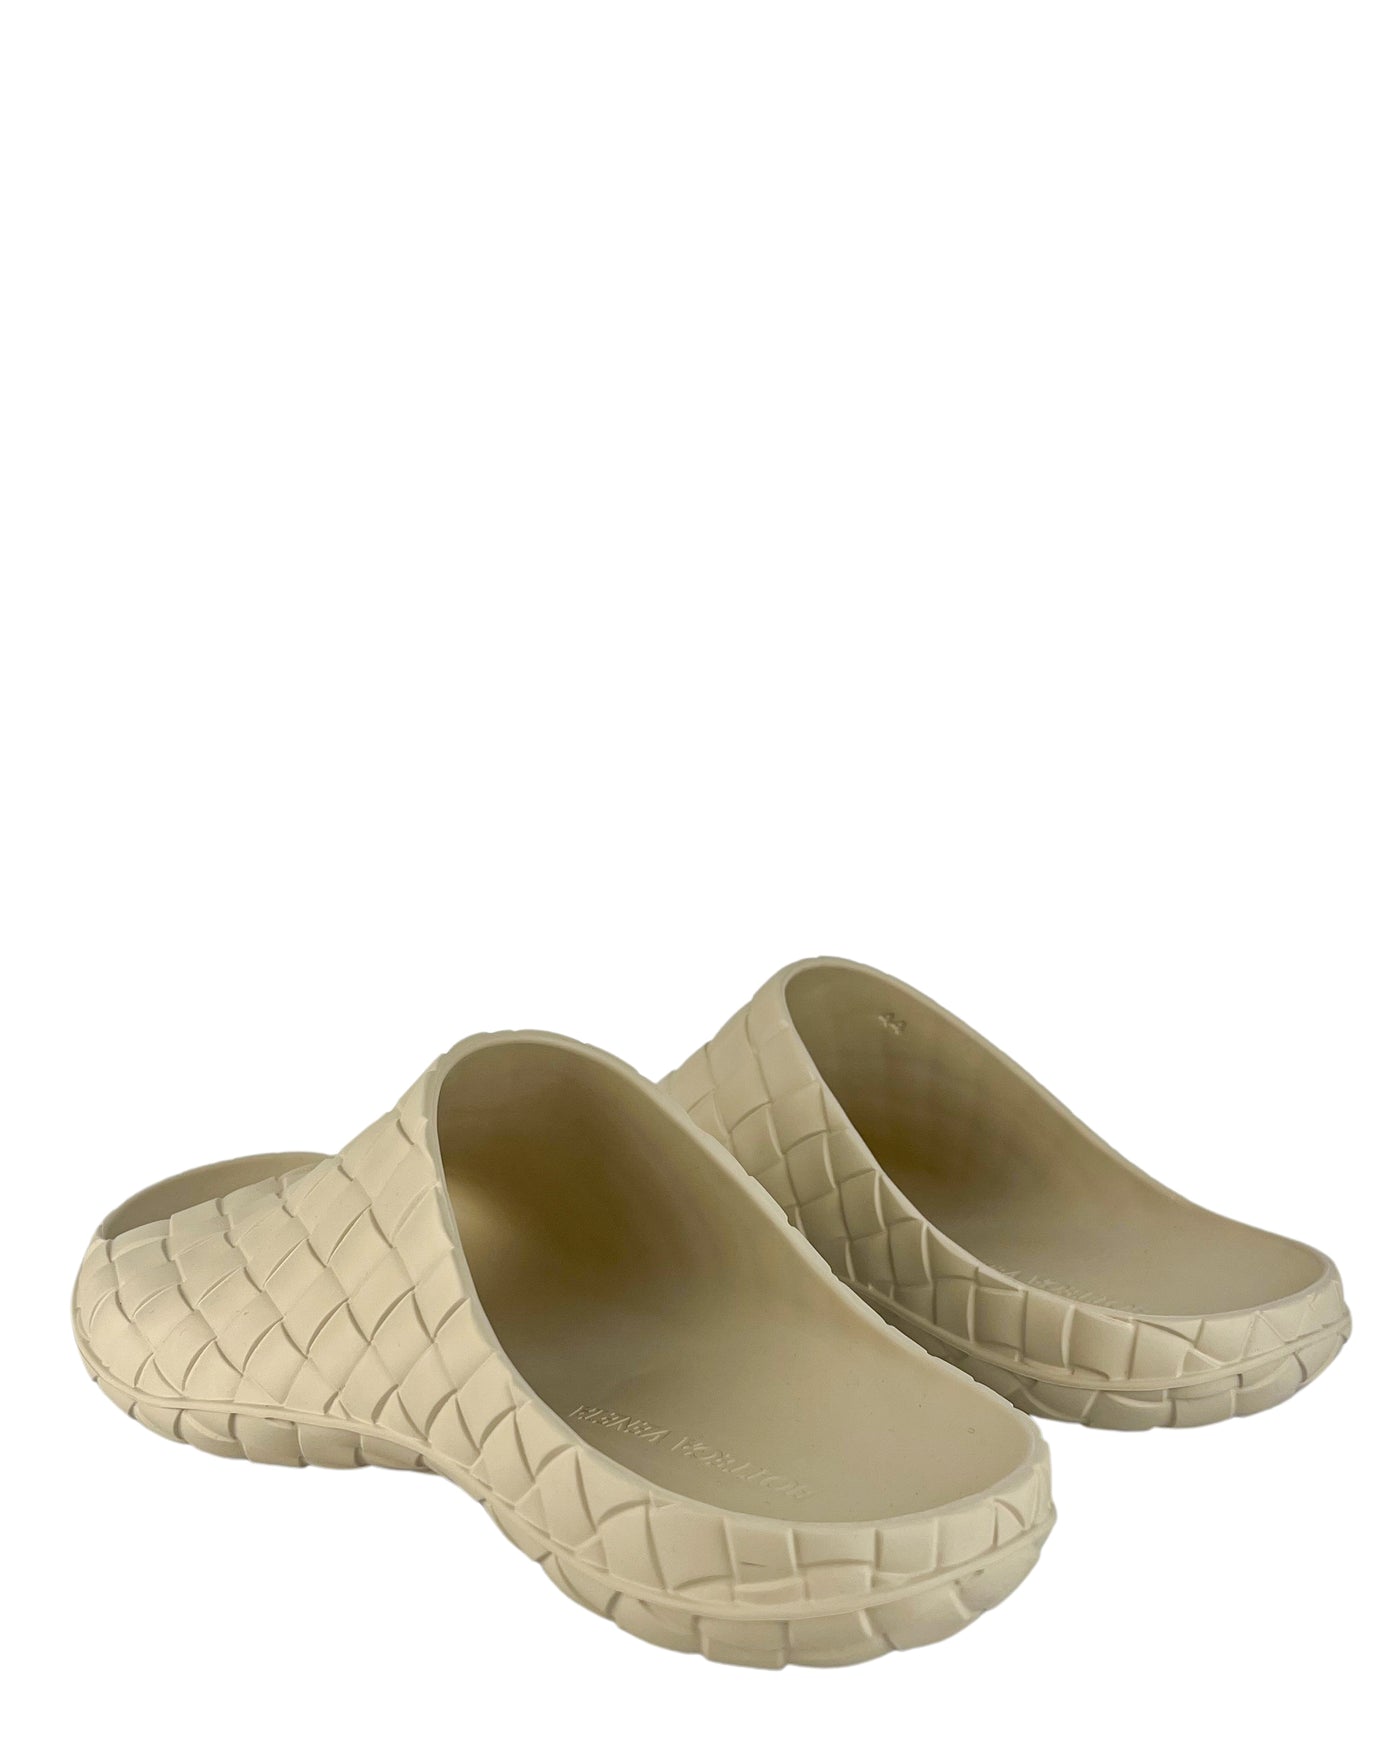 Bottega Veneta Rubber Sandals in Sea Salt - Discounts on Bottega Veneta at UAL